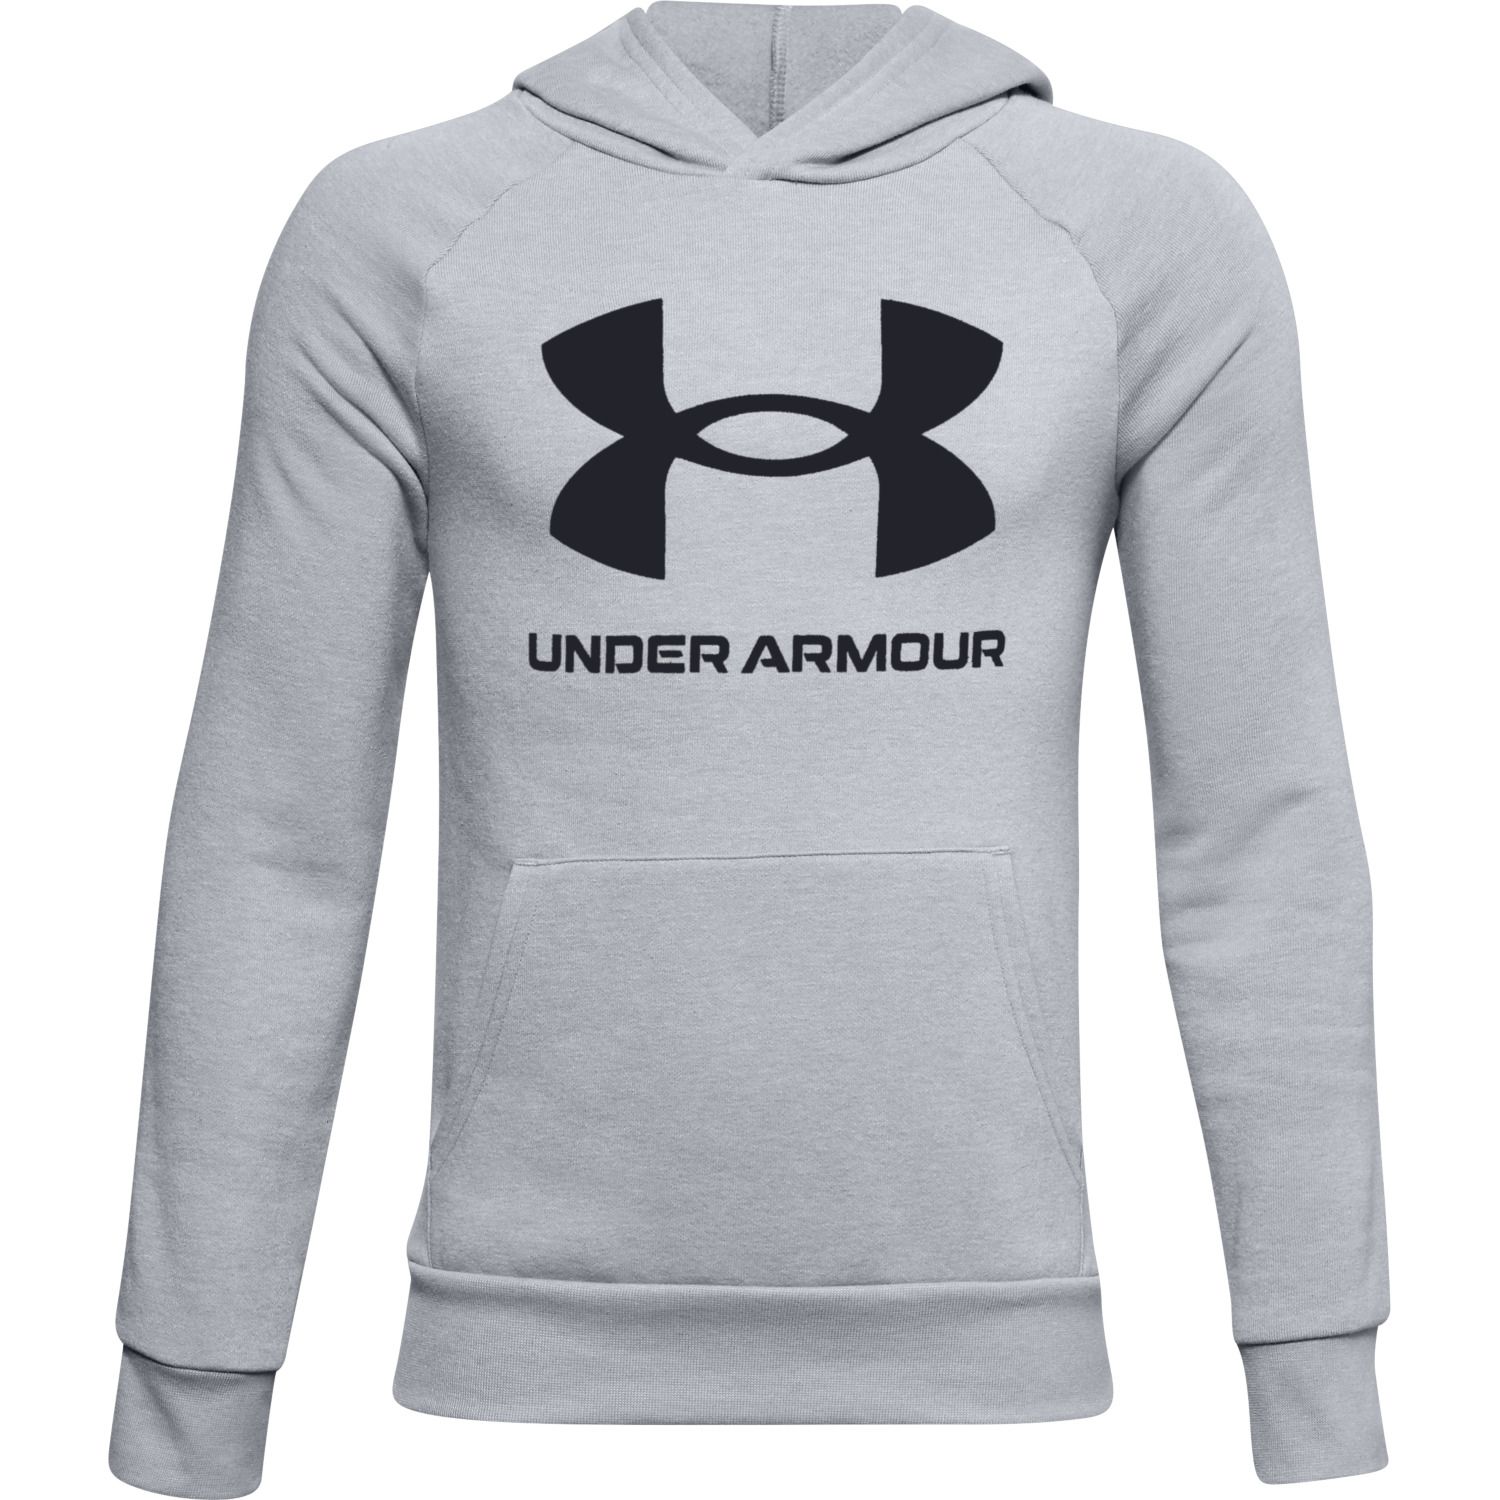 under armor jumper